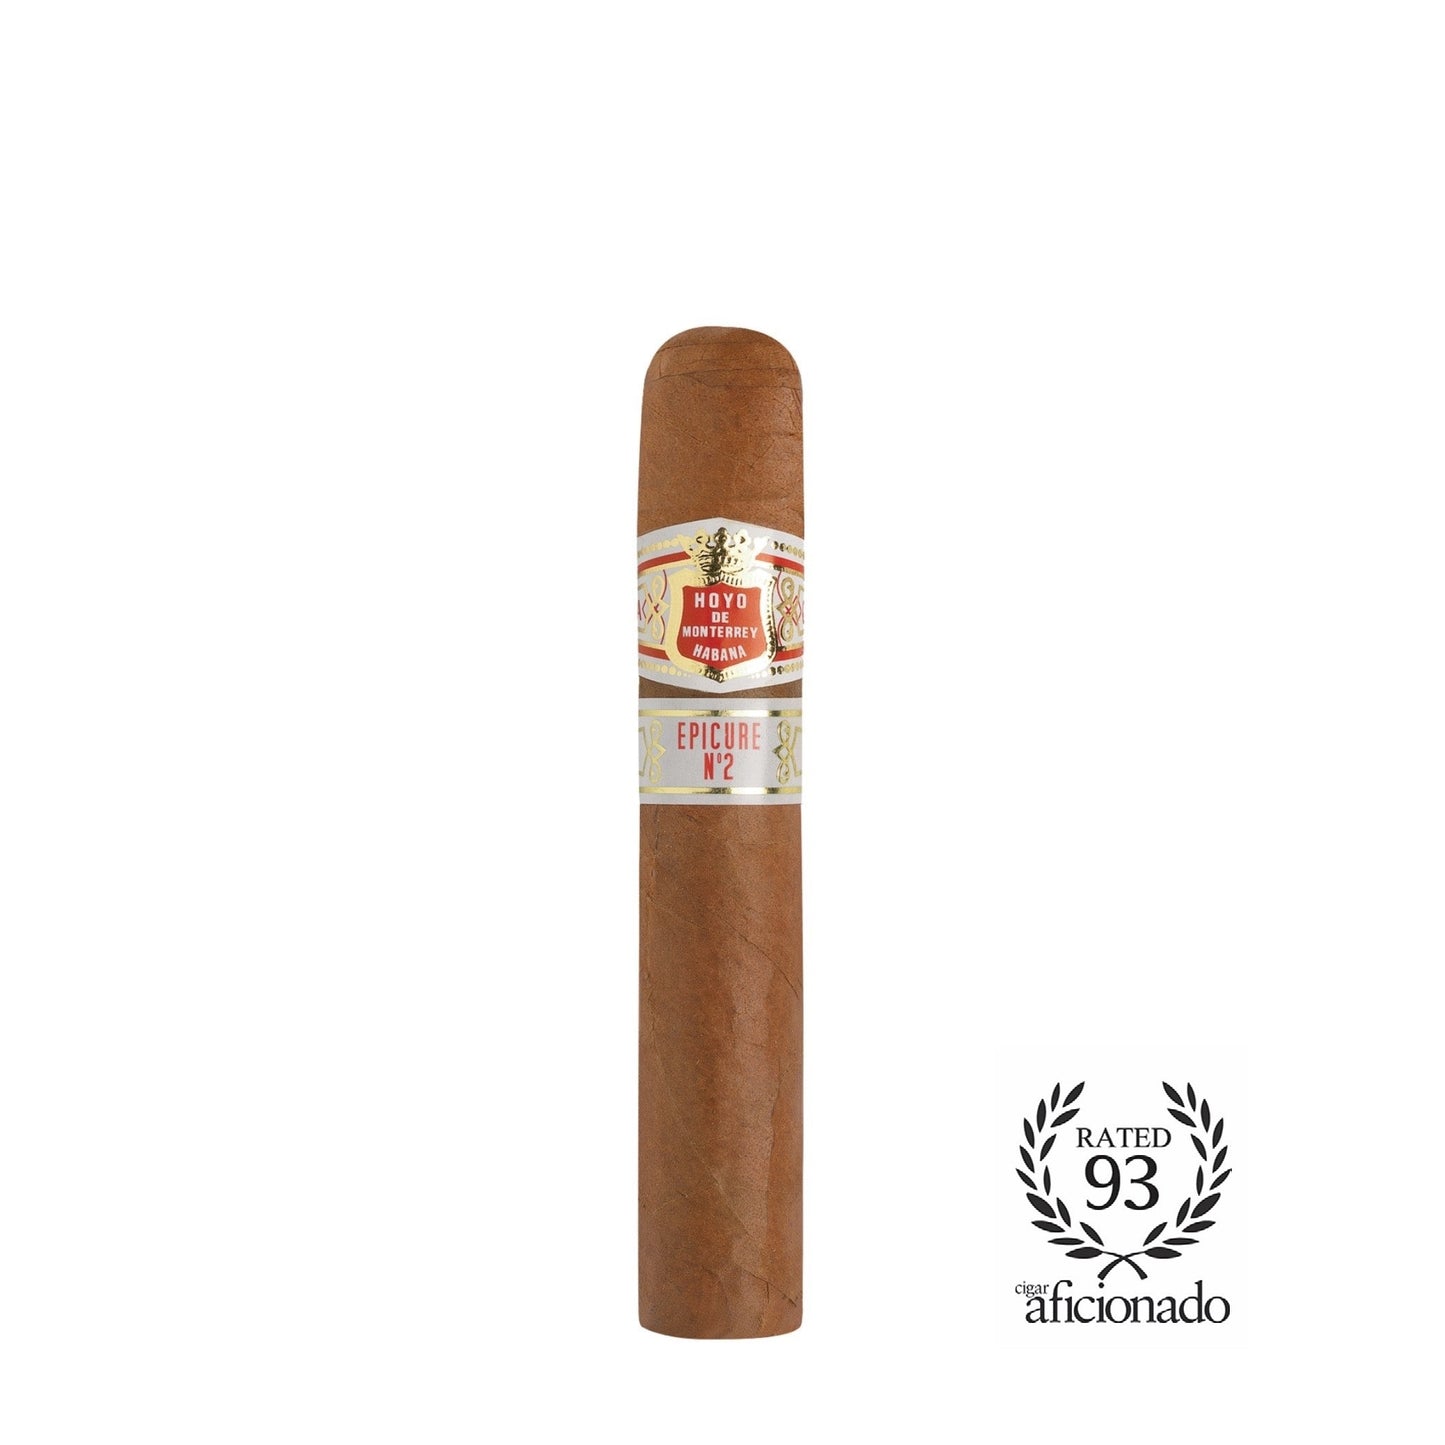 Hoyo De Monterrey Epicure No2 Cigar